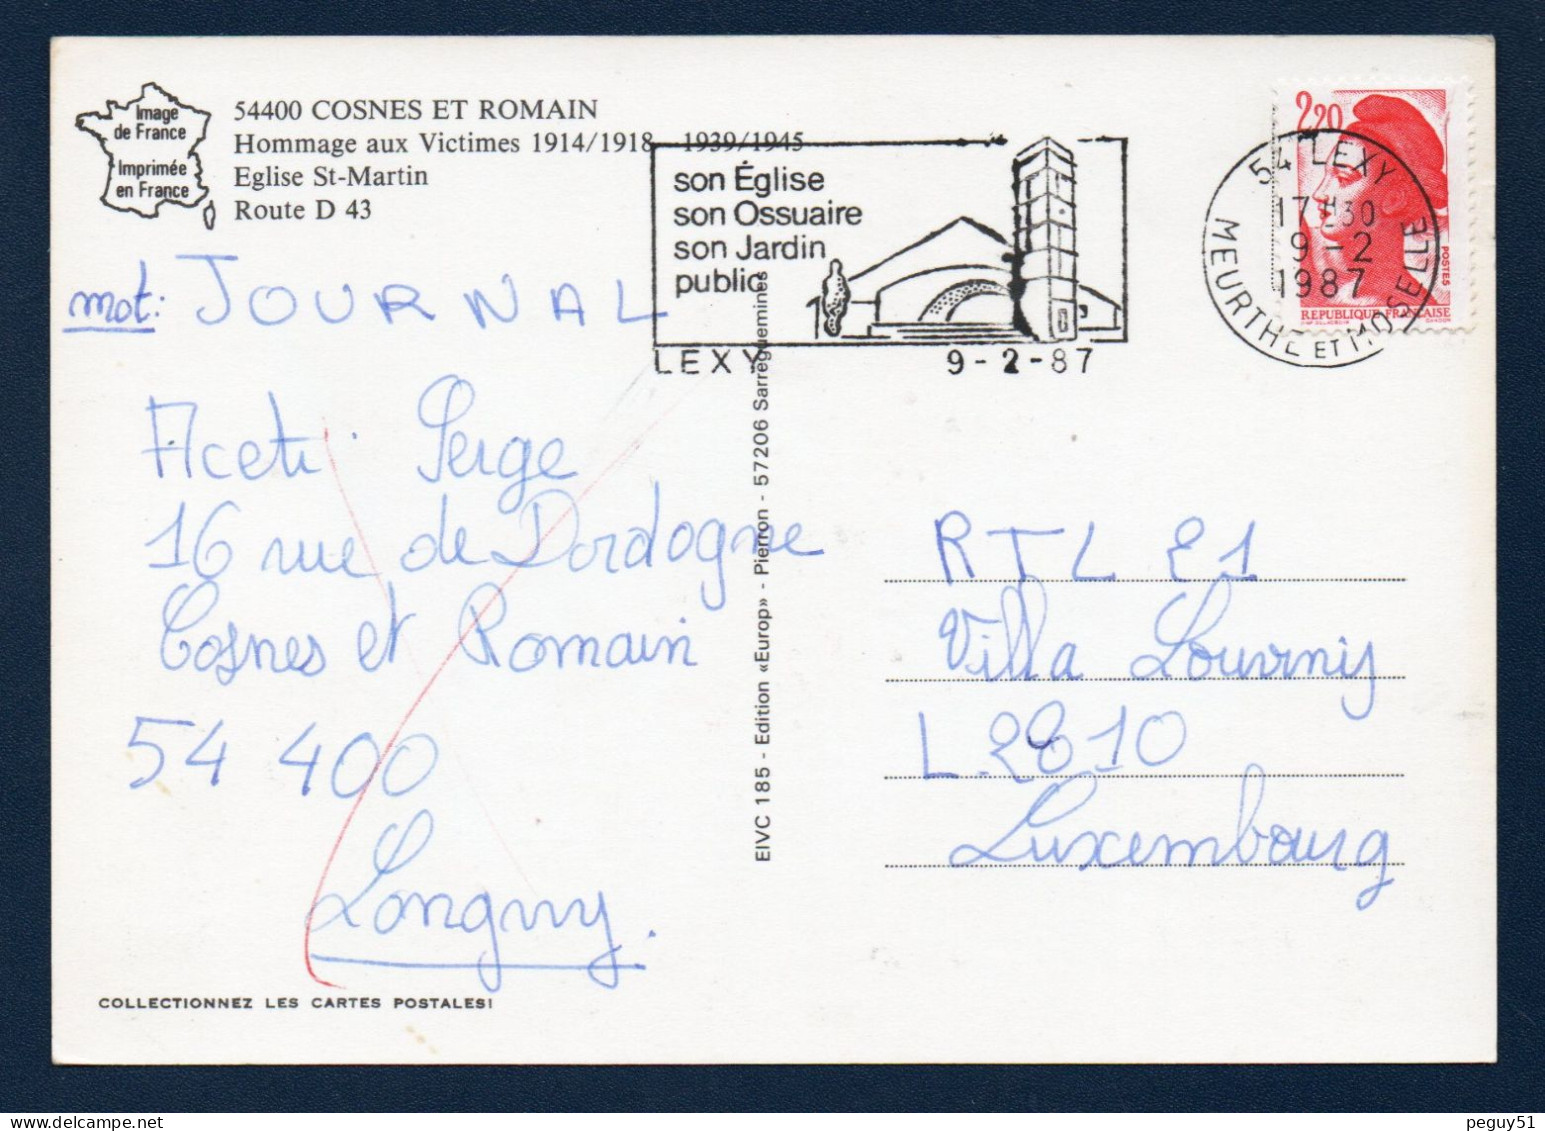 54. Environs De Longwy. Cosnes Et Romain. Blason. Monuments Aux Morts, église Saint-Martin Et Route D43. 1987 - Longwy